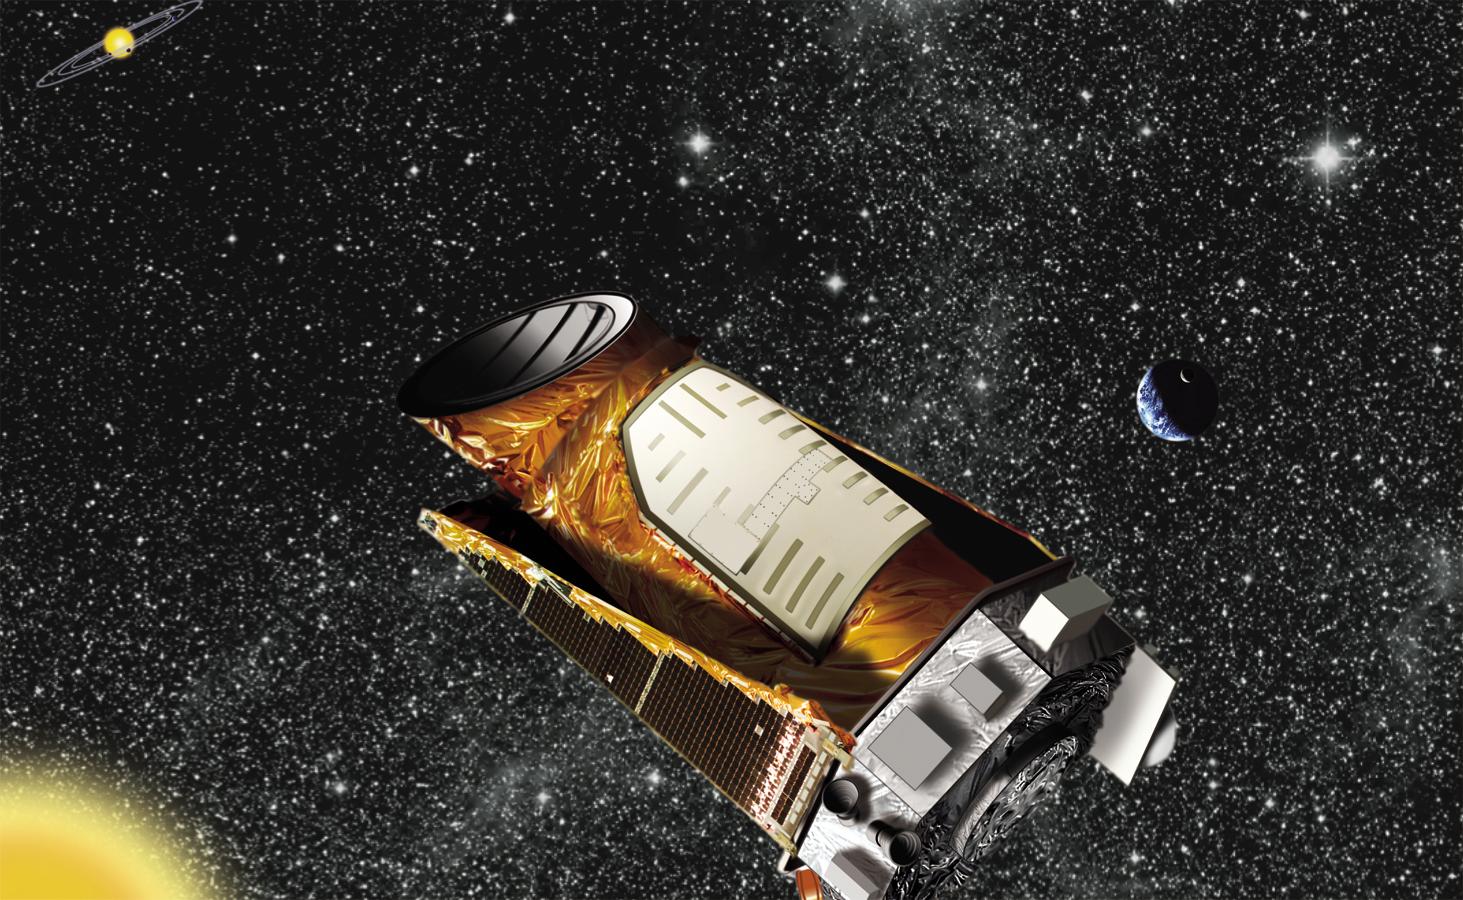 Kepler telescope